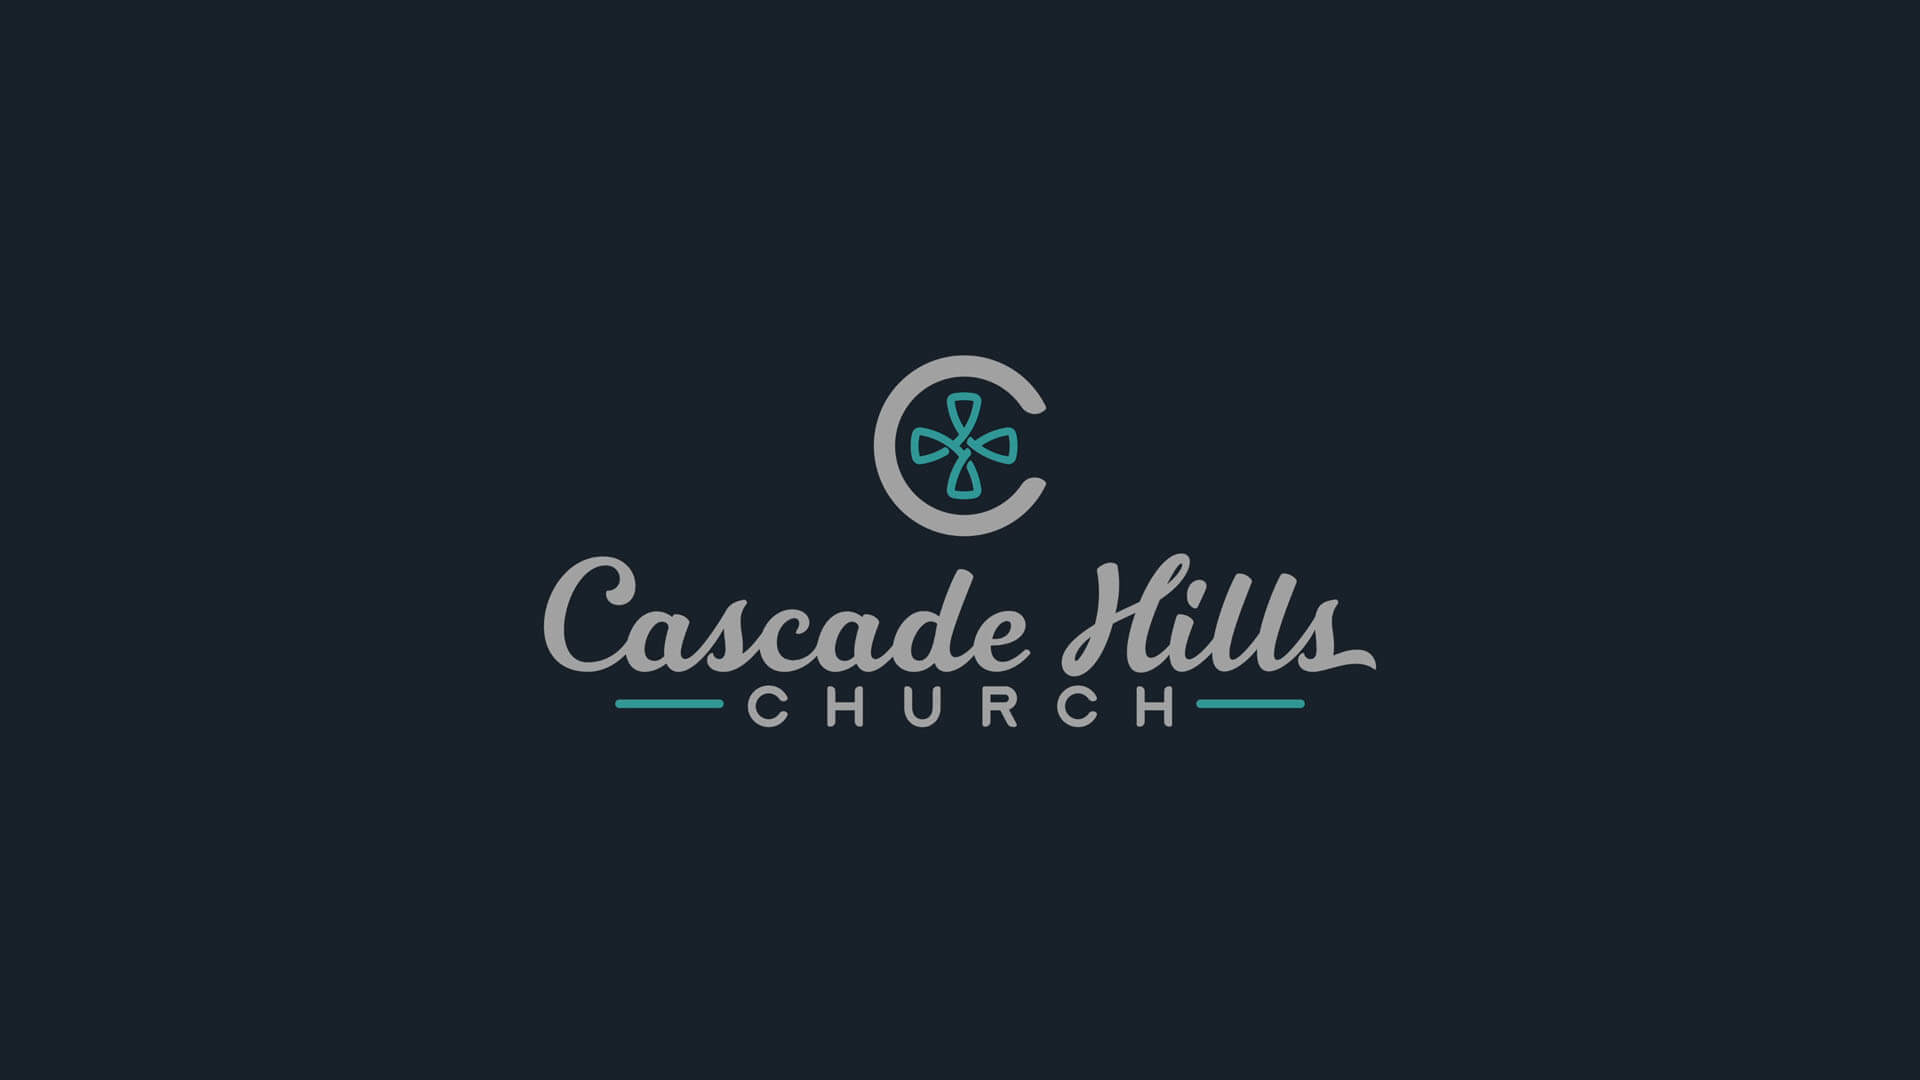 (c) Cascadehills.com